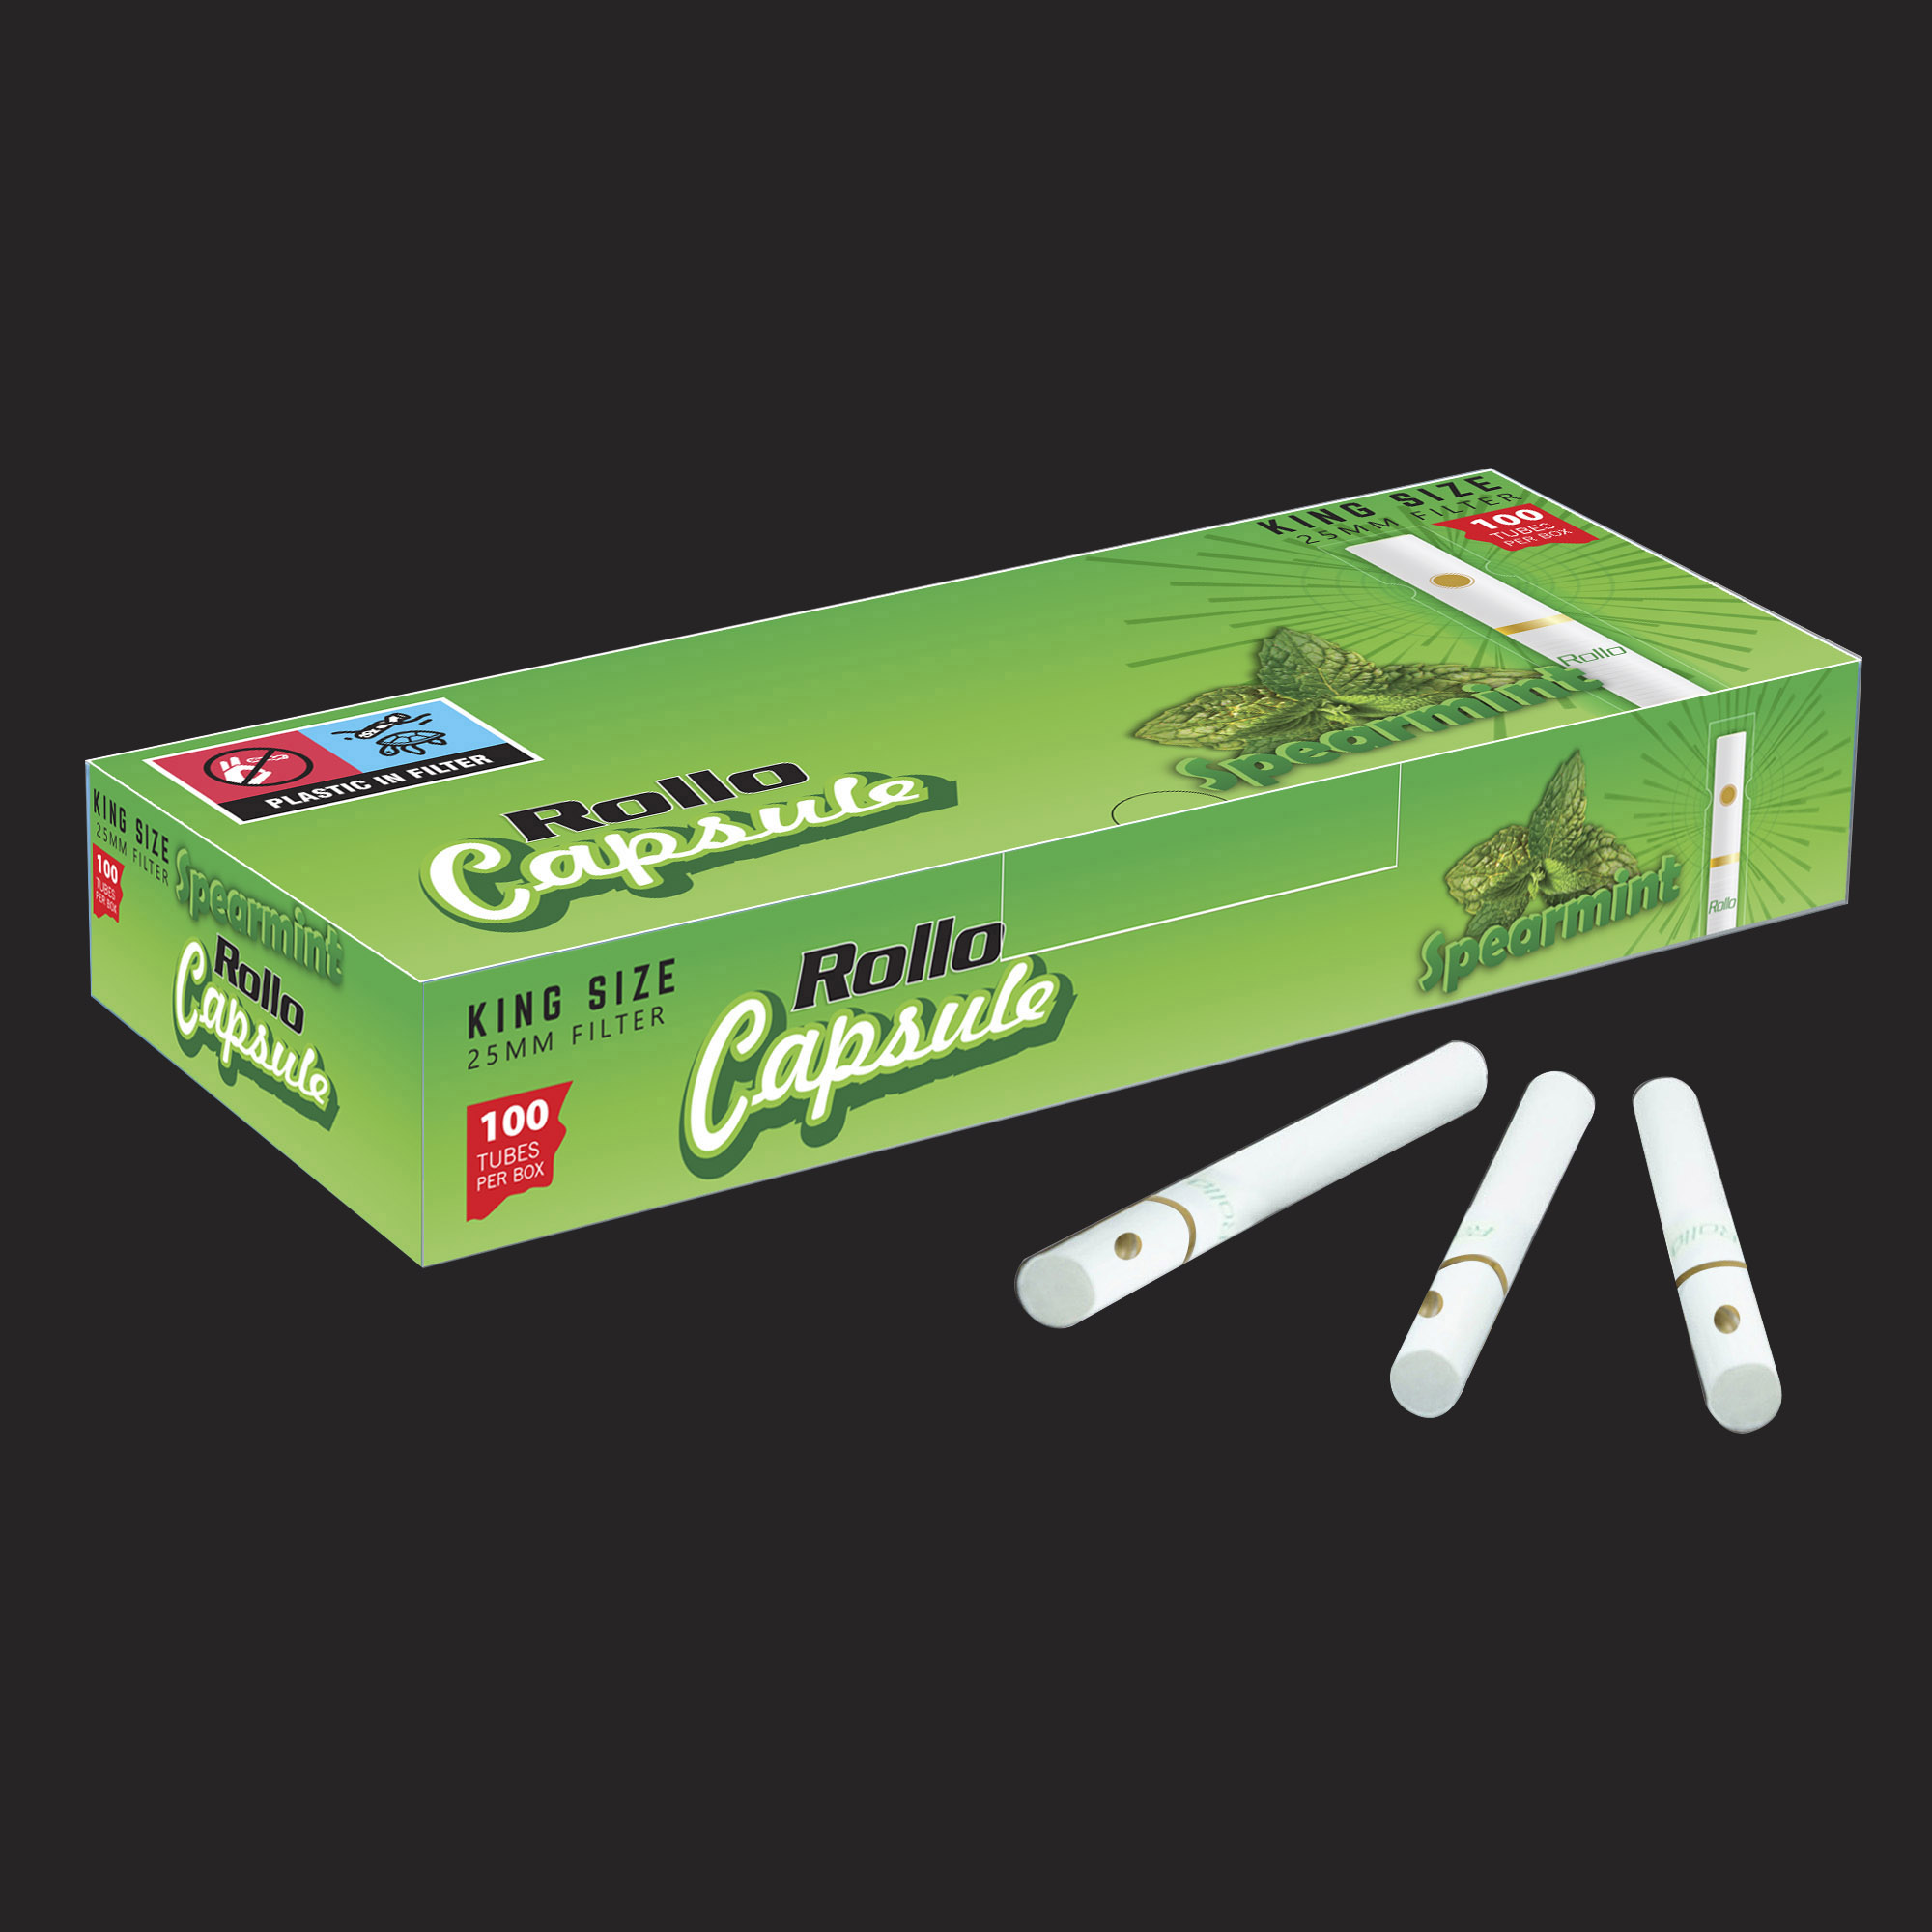 King Size Cigarette Tubes Rollo Spearmint Capsule 100 CT